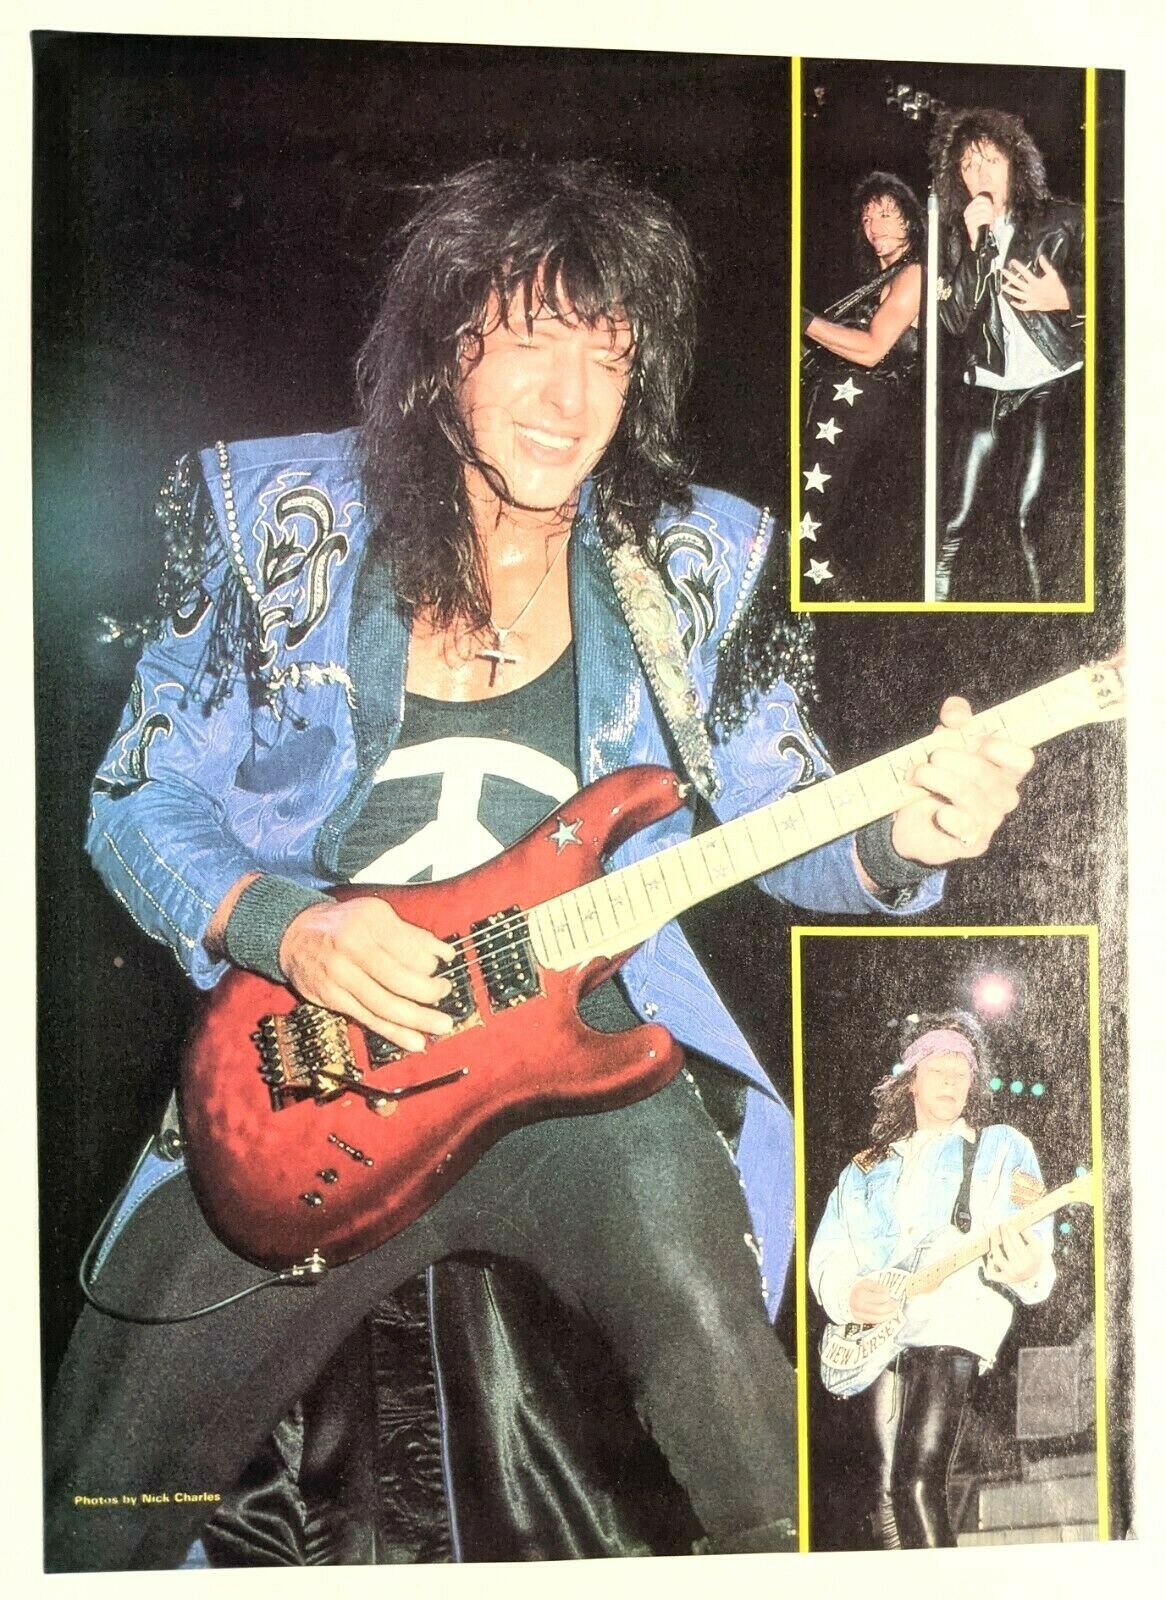 Bon Jovi / Richie Sambora Live / Magazine Full Page Pinup Poster Clipping (4)